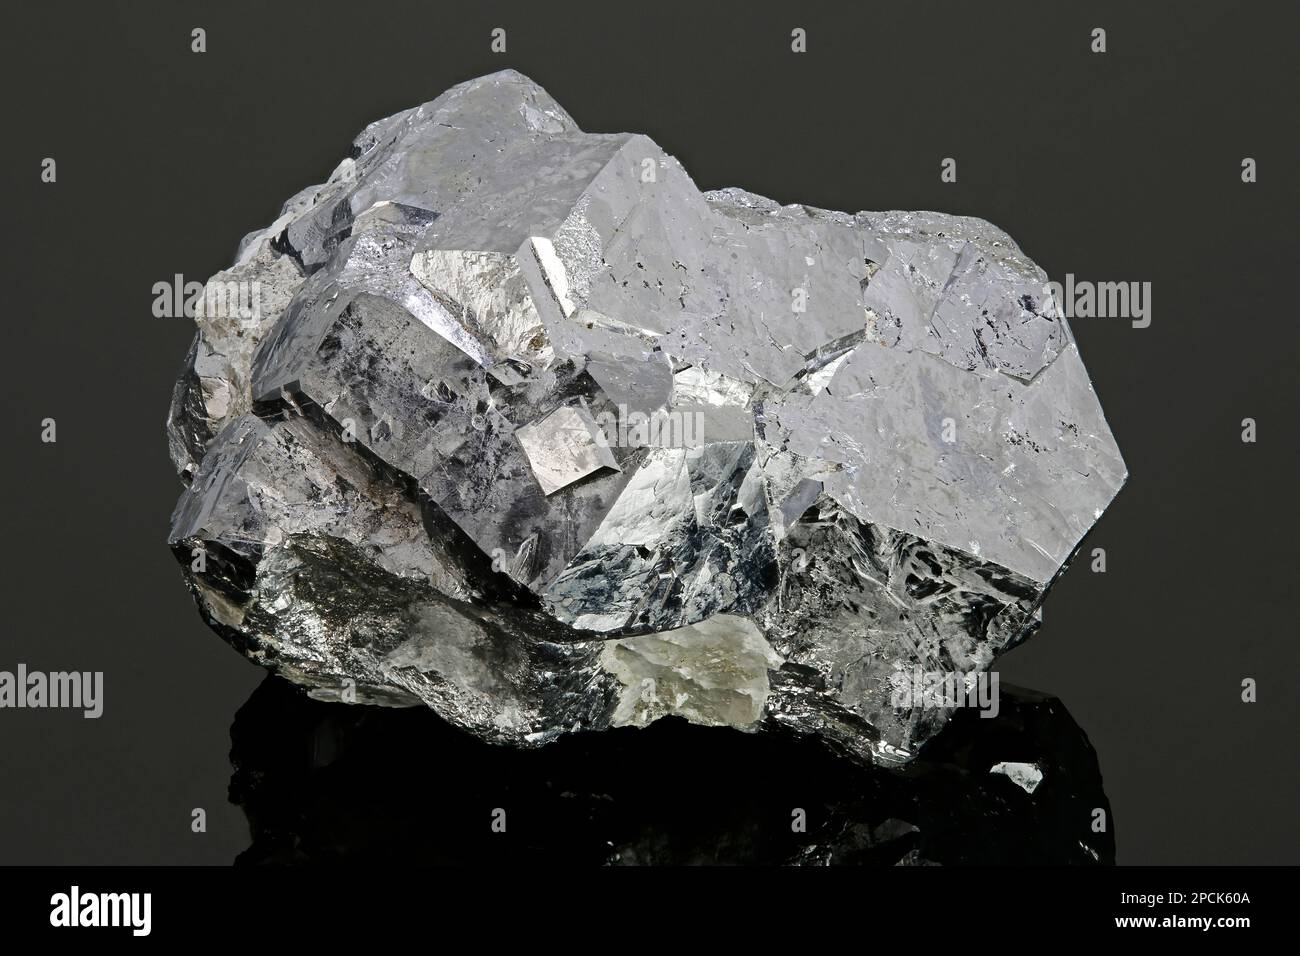 Skutterudite (Cobalt arsenide mineral), Morocco Stock Photo